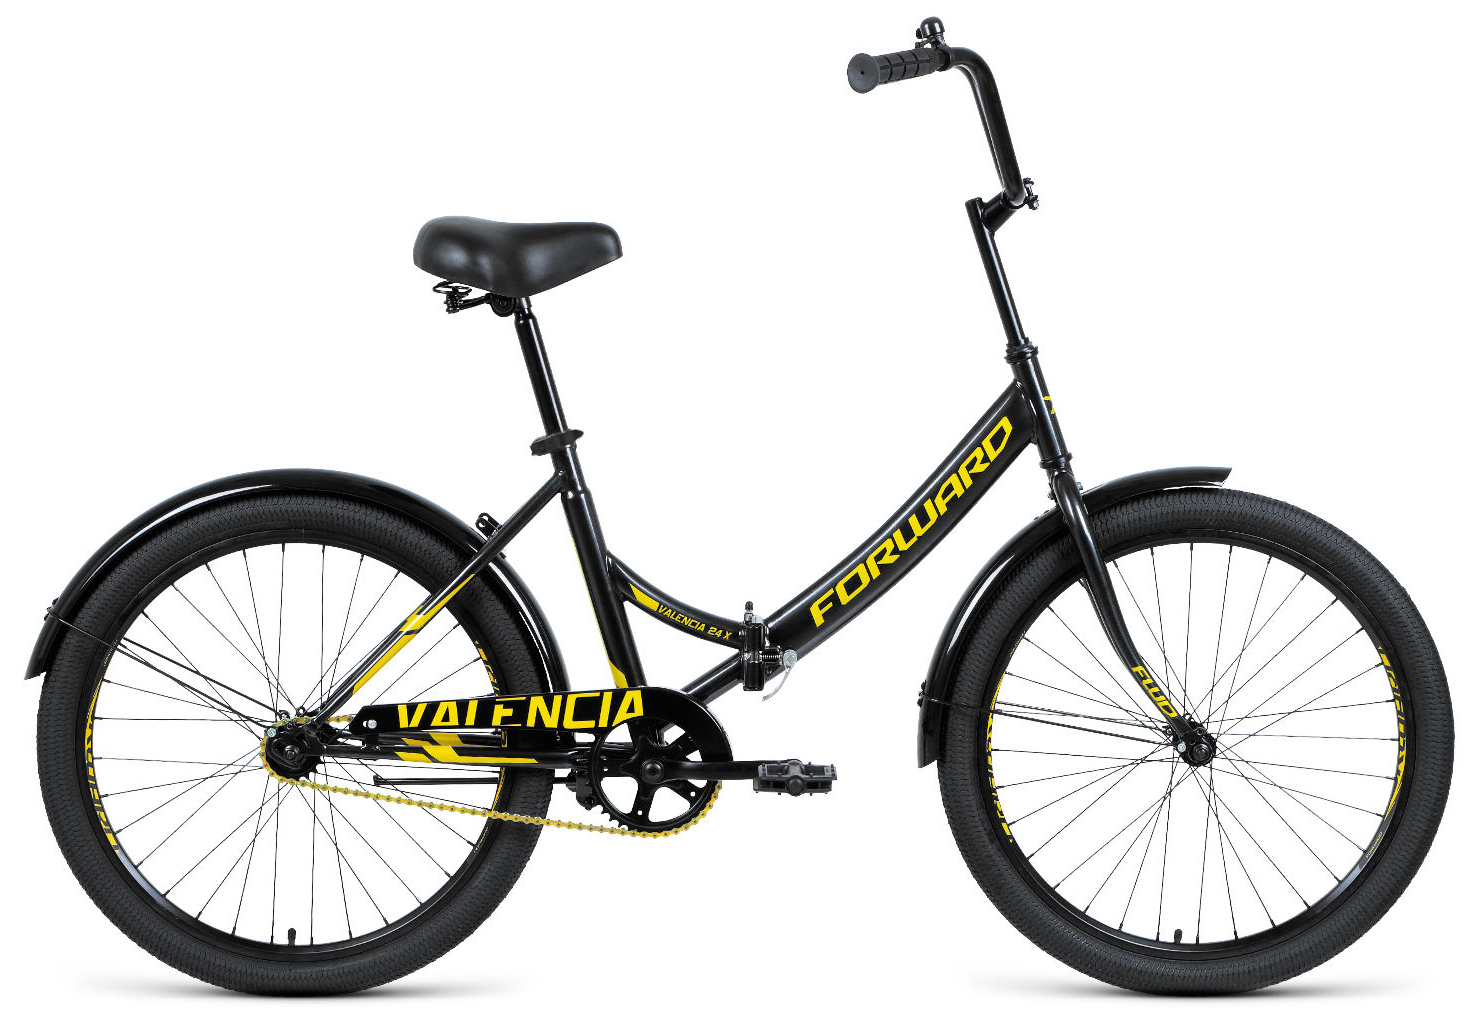  Отзывы о Детском велосипеде Forward Valencia 24 X (2021) 2021